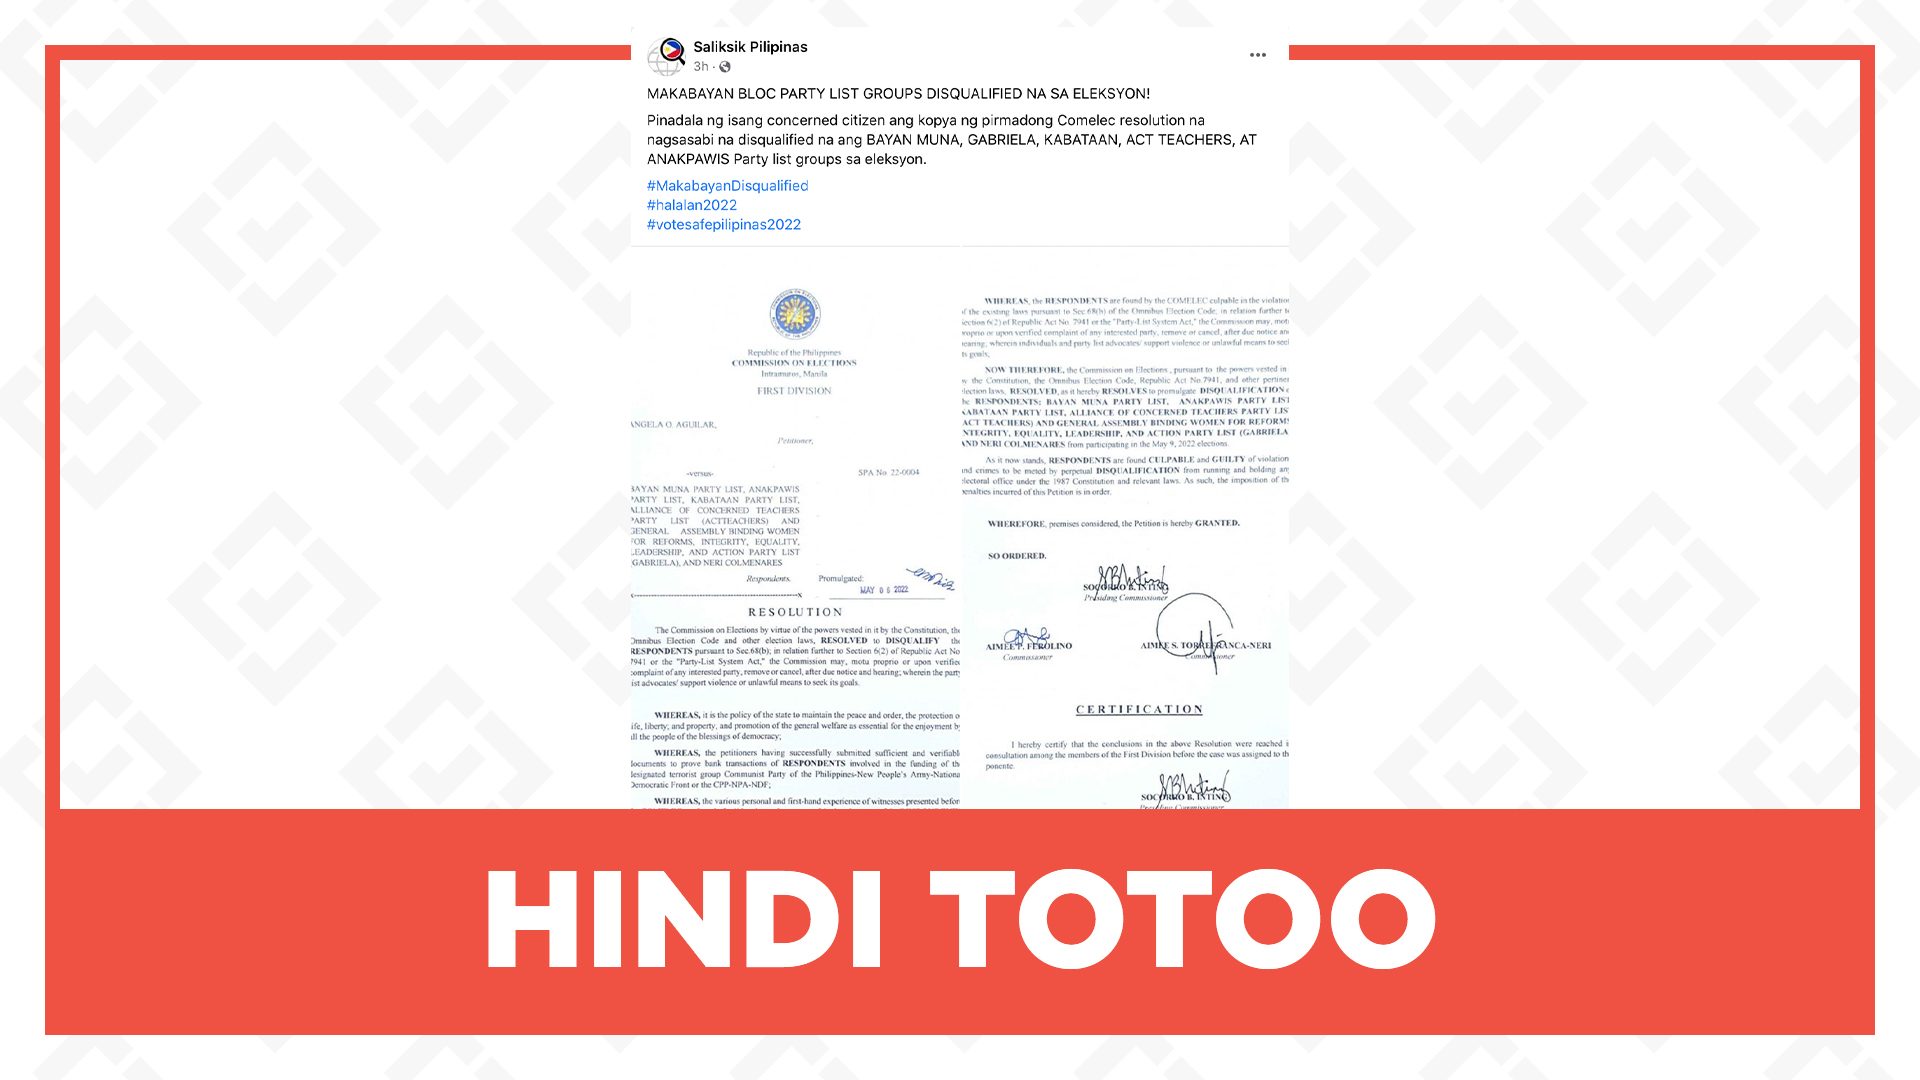 HINDI TOTOO: Diskalipikado ang party-list groups ng Makabayan bloc sa 2022 eleksiyon